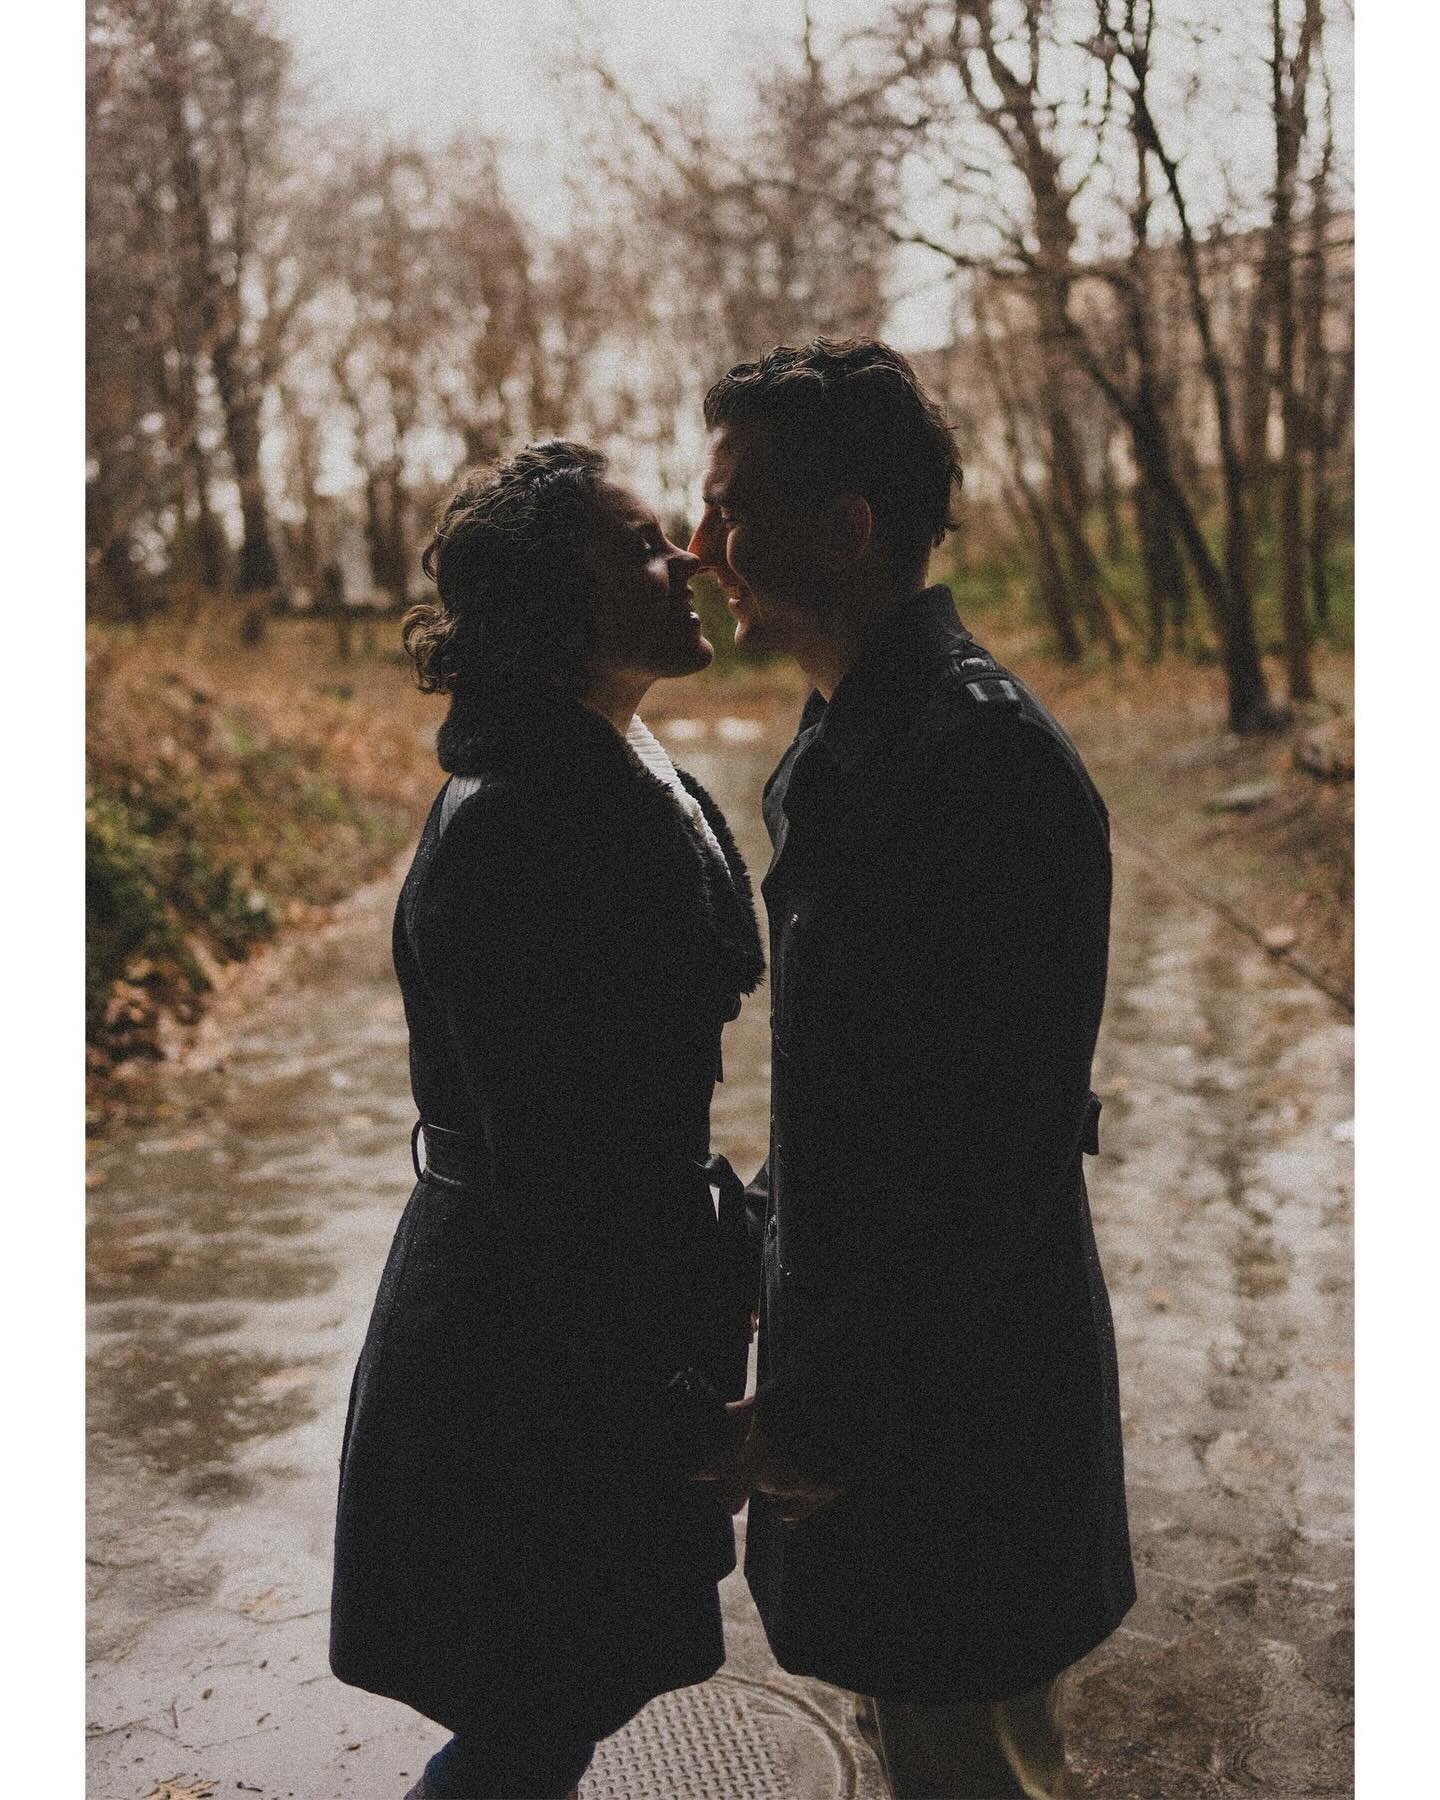 ela &amp; kurt engagement x prospect park brooklyn ny
#brooklynweddingphotographer #brooklynengagement #coupleinrain #rainlover #prospectpark #engagementideas